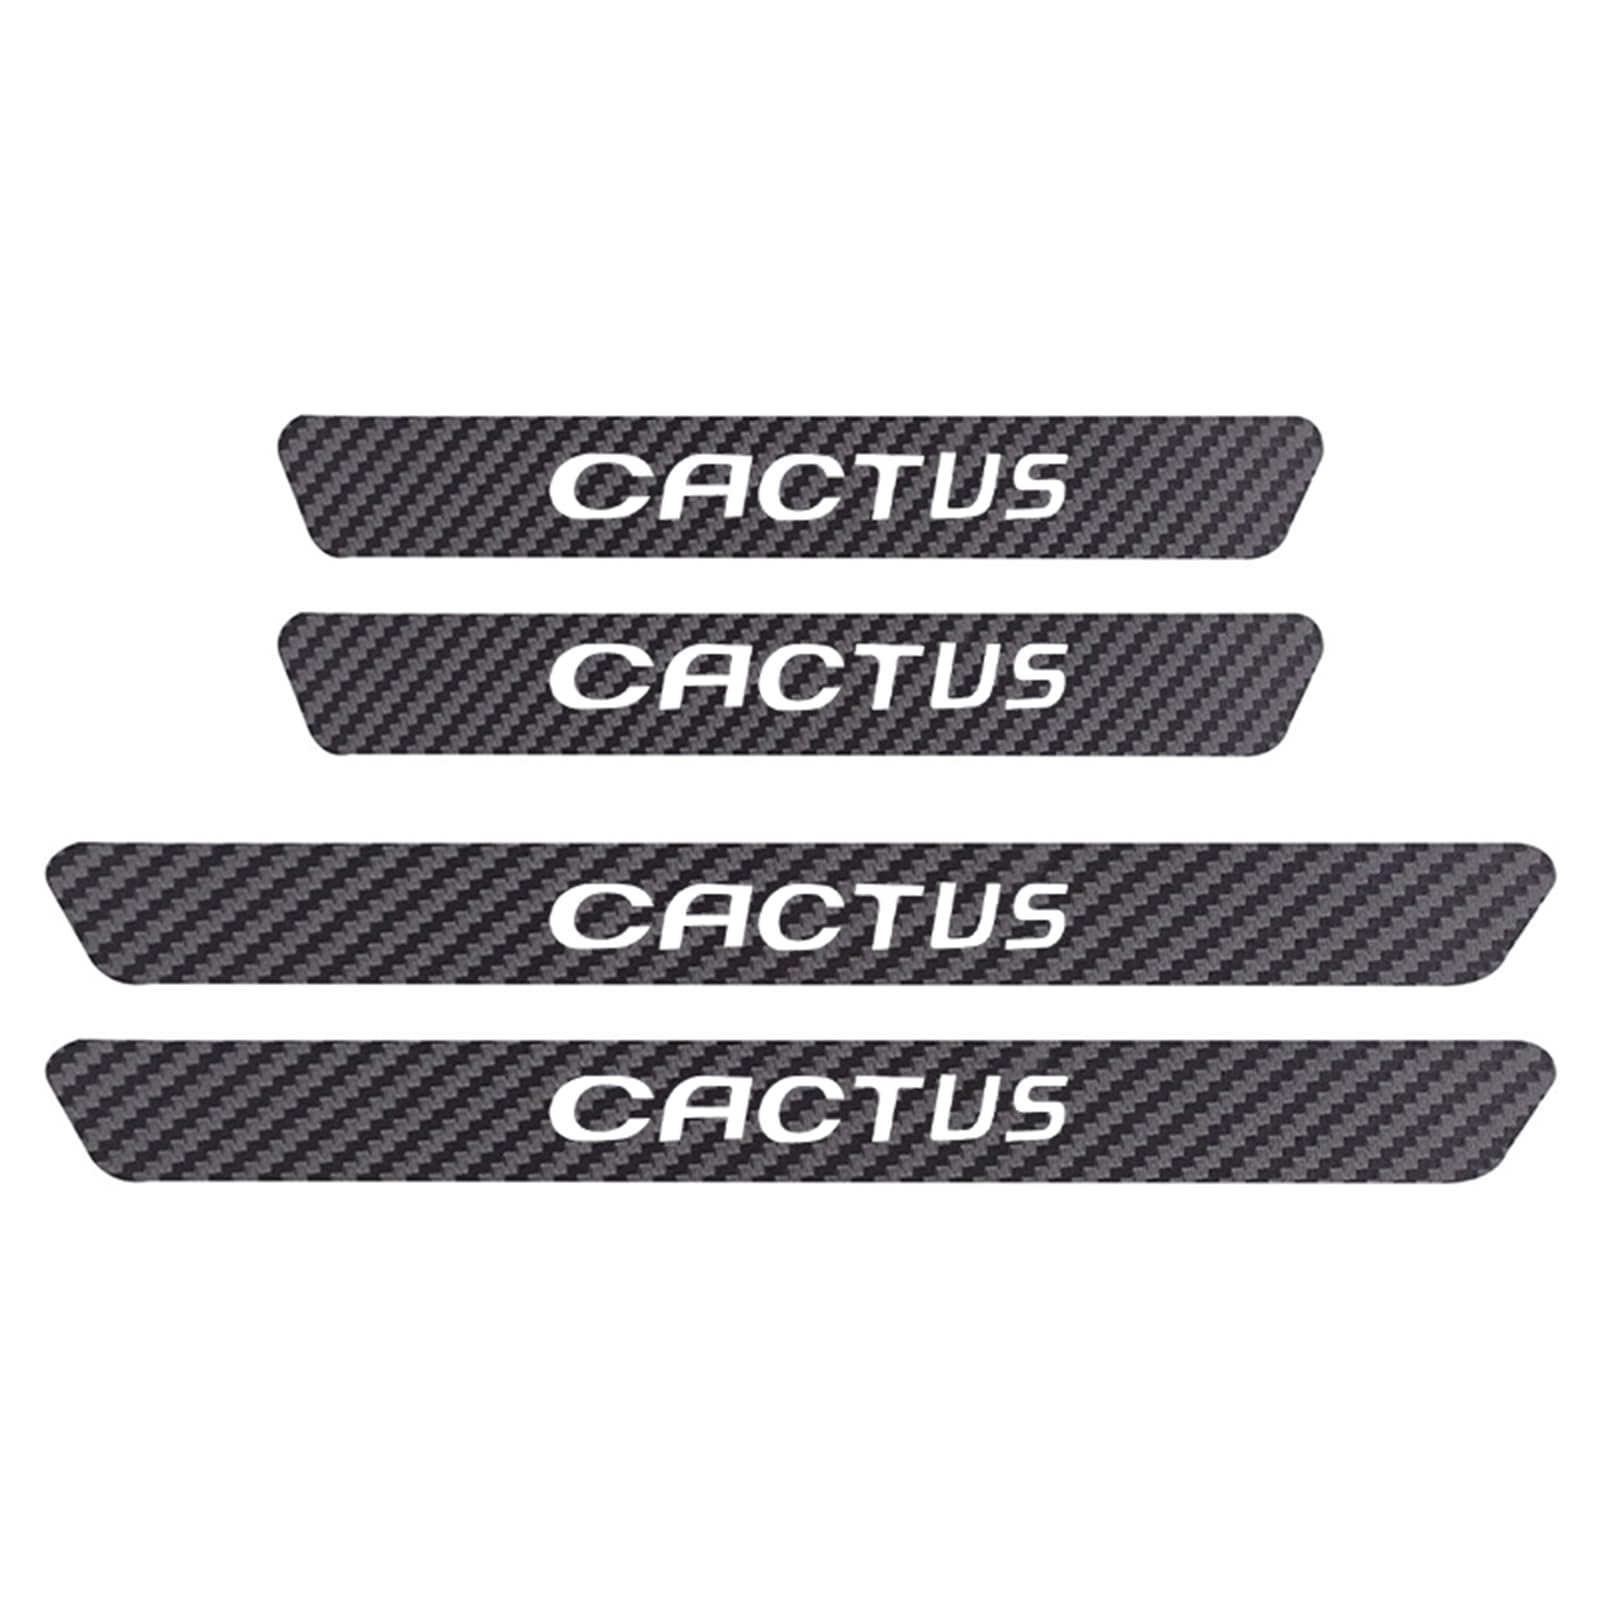 4 Stück Auto Kohlefaser Türschwellen Aufkleber Anti Kratz Abnutzungs Einstiegsleisten Schutz Für Citr-oen Cactus C8 C6 C5 C4L C4 C3 C2 C1 DS DS3 DS5 DS7 DS9 Auto Dekorations ZubehöR,Cactus von Symilov